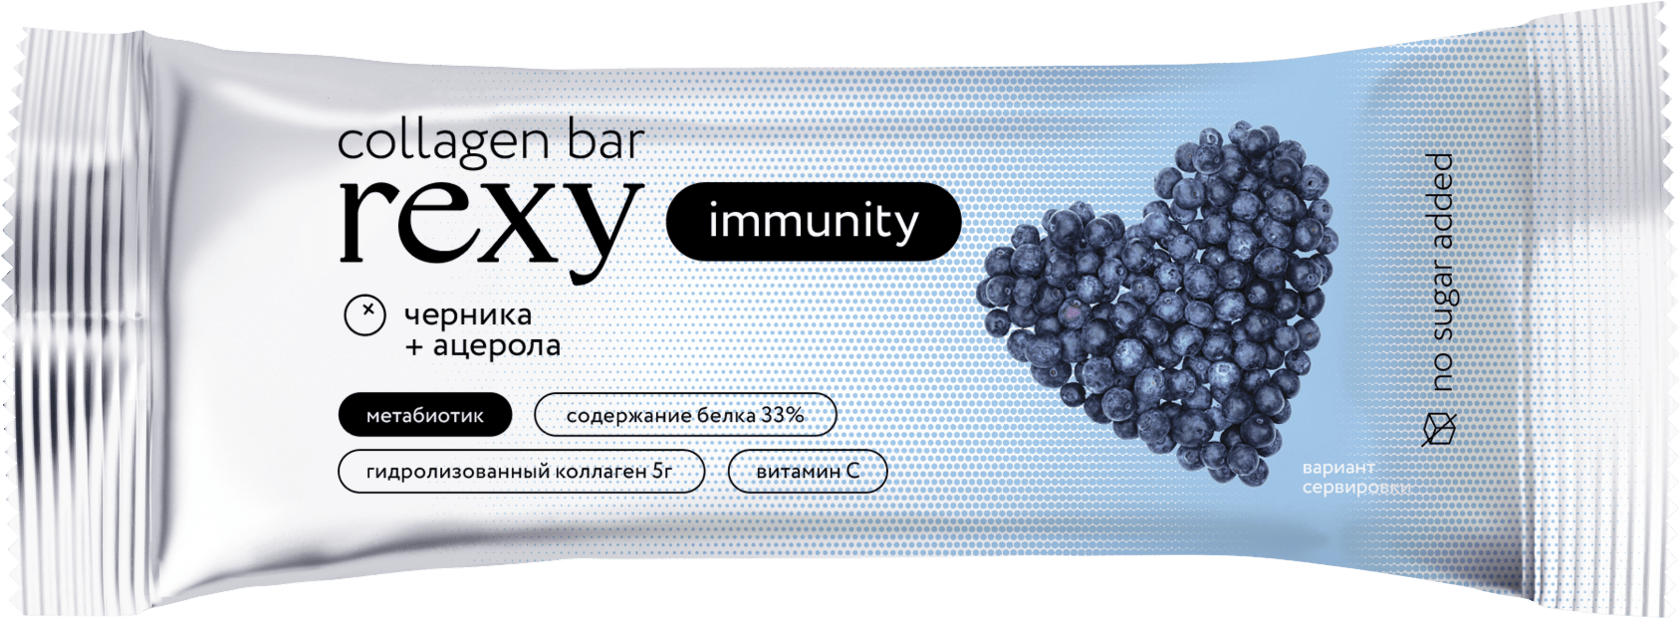 Батончик immunity Вкус: черника - ацерола